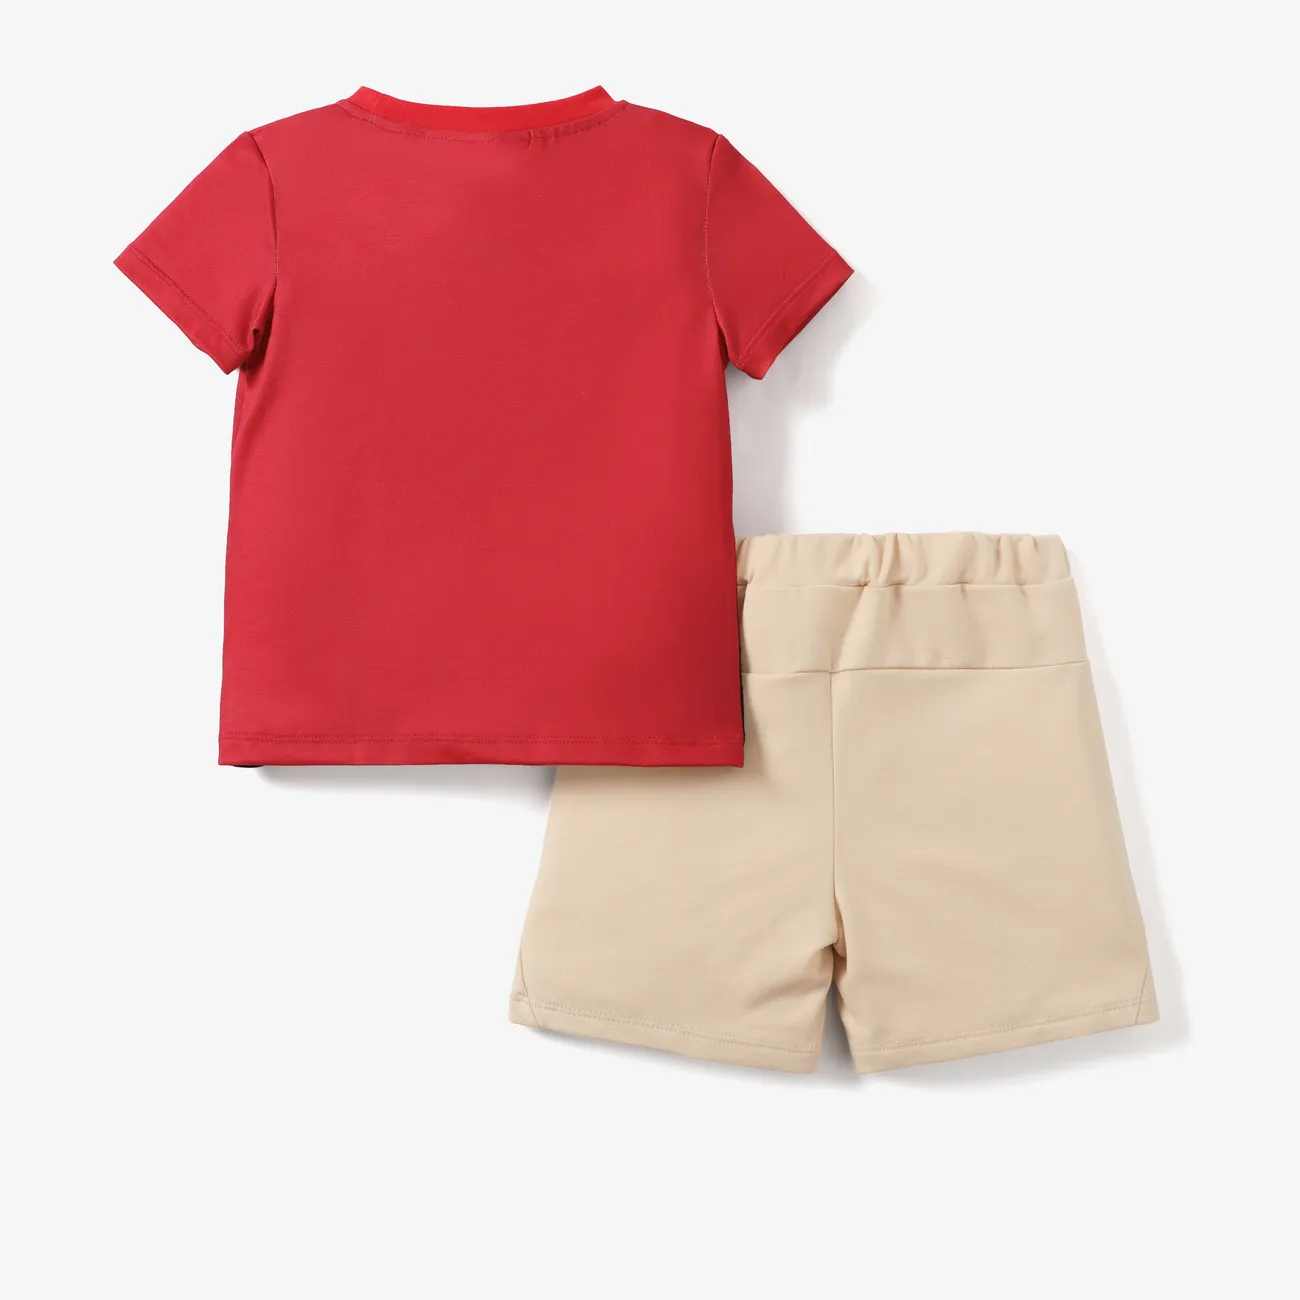 El Rey León de Disney 2 unidades Niño pequeño Chico Infantil conjuntos de camiseta Rojo big image 1